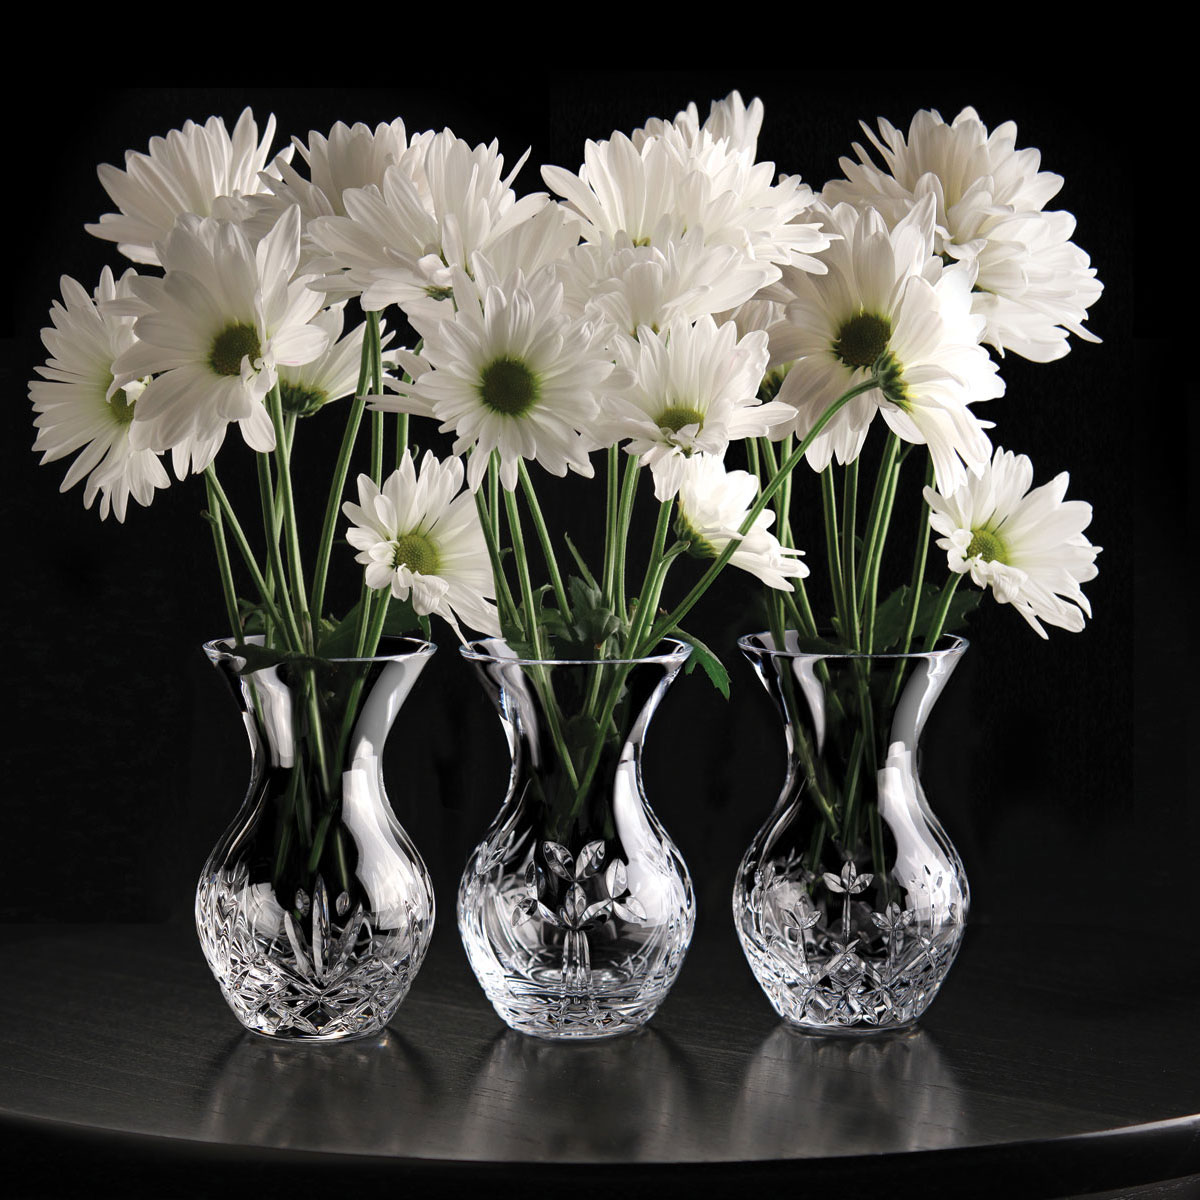 Cashs Ireland, Three Little Sisters, Set of Three Crystal Vases